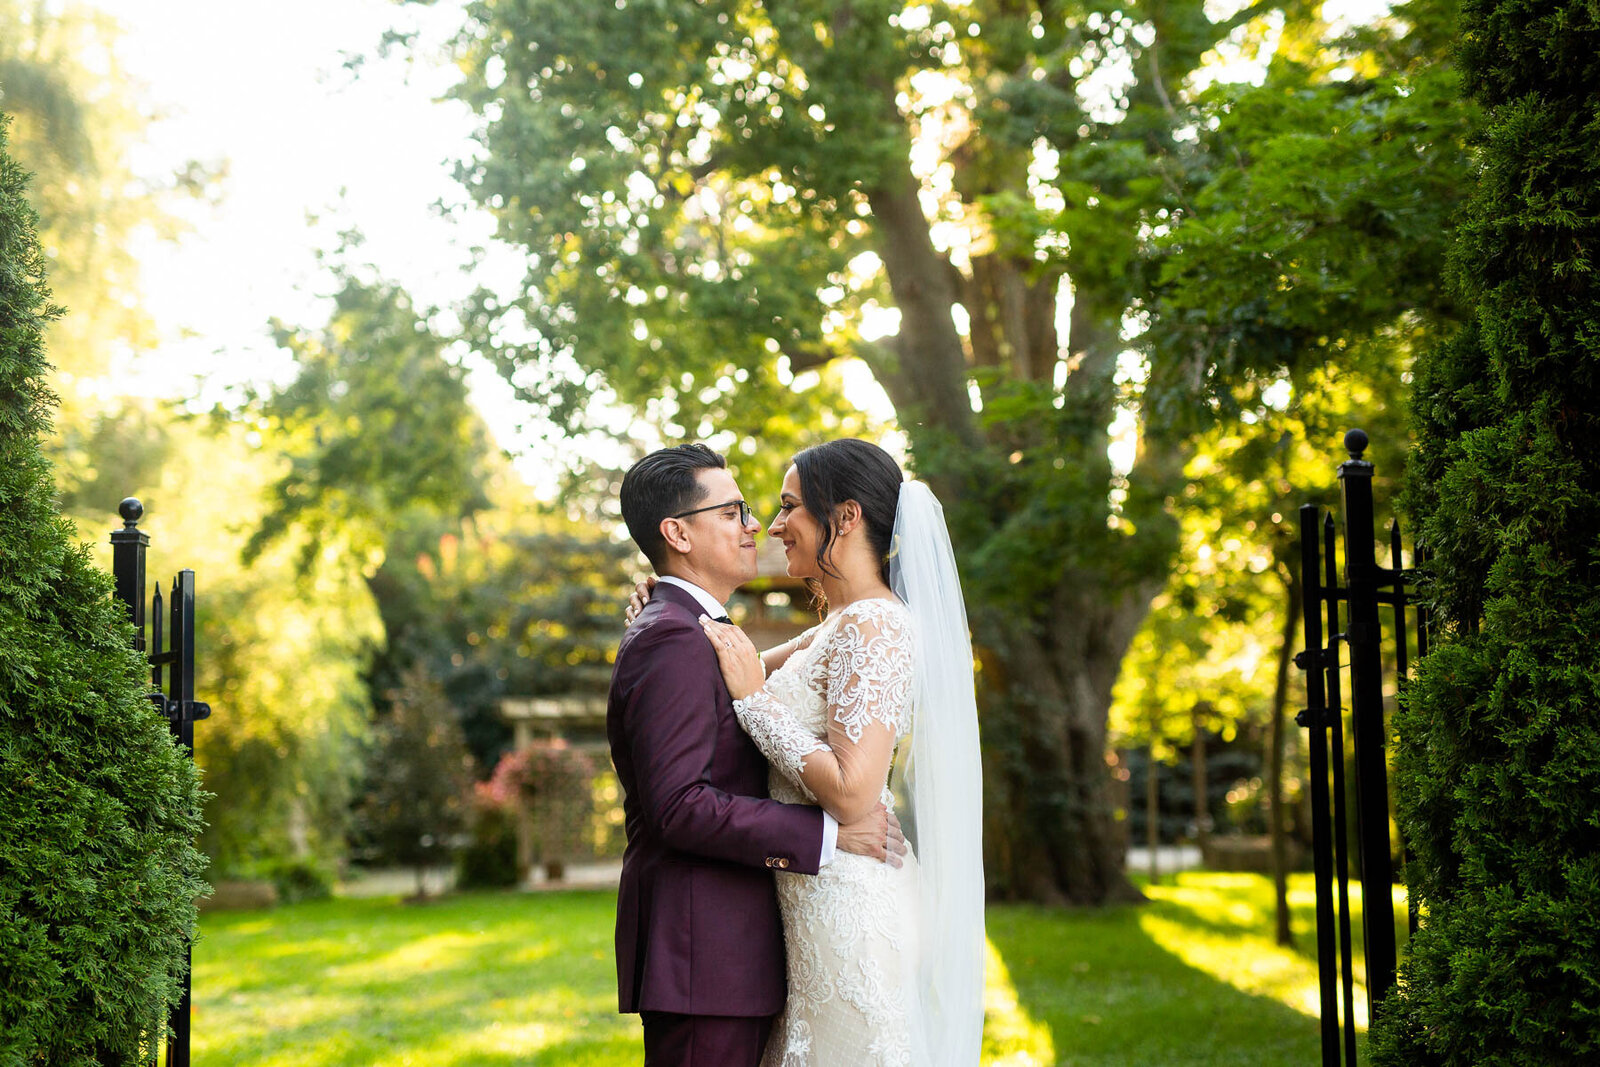 151 Outdoor Toronto Wedding Venues